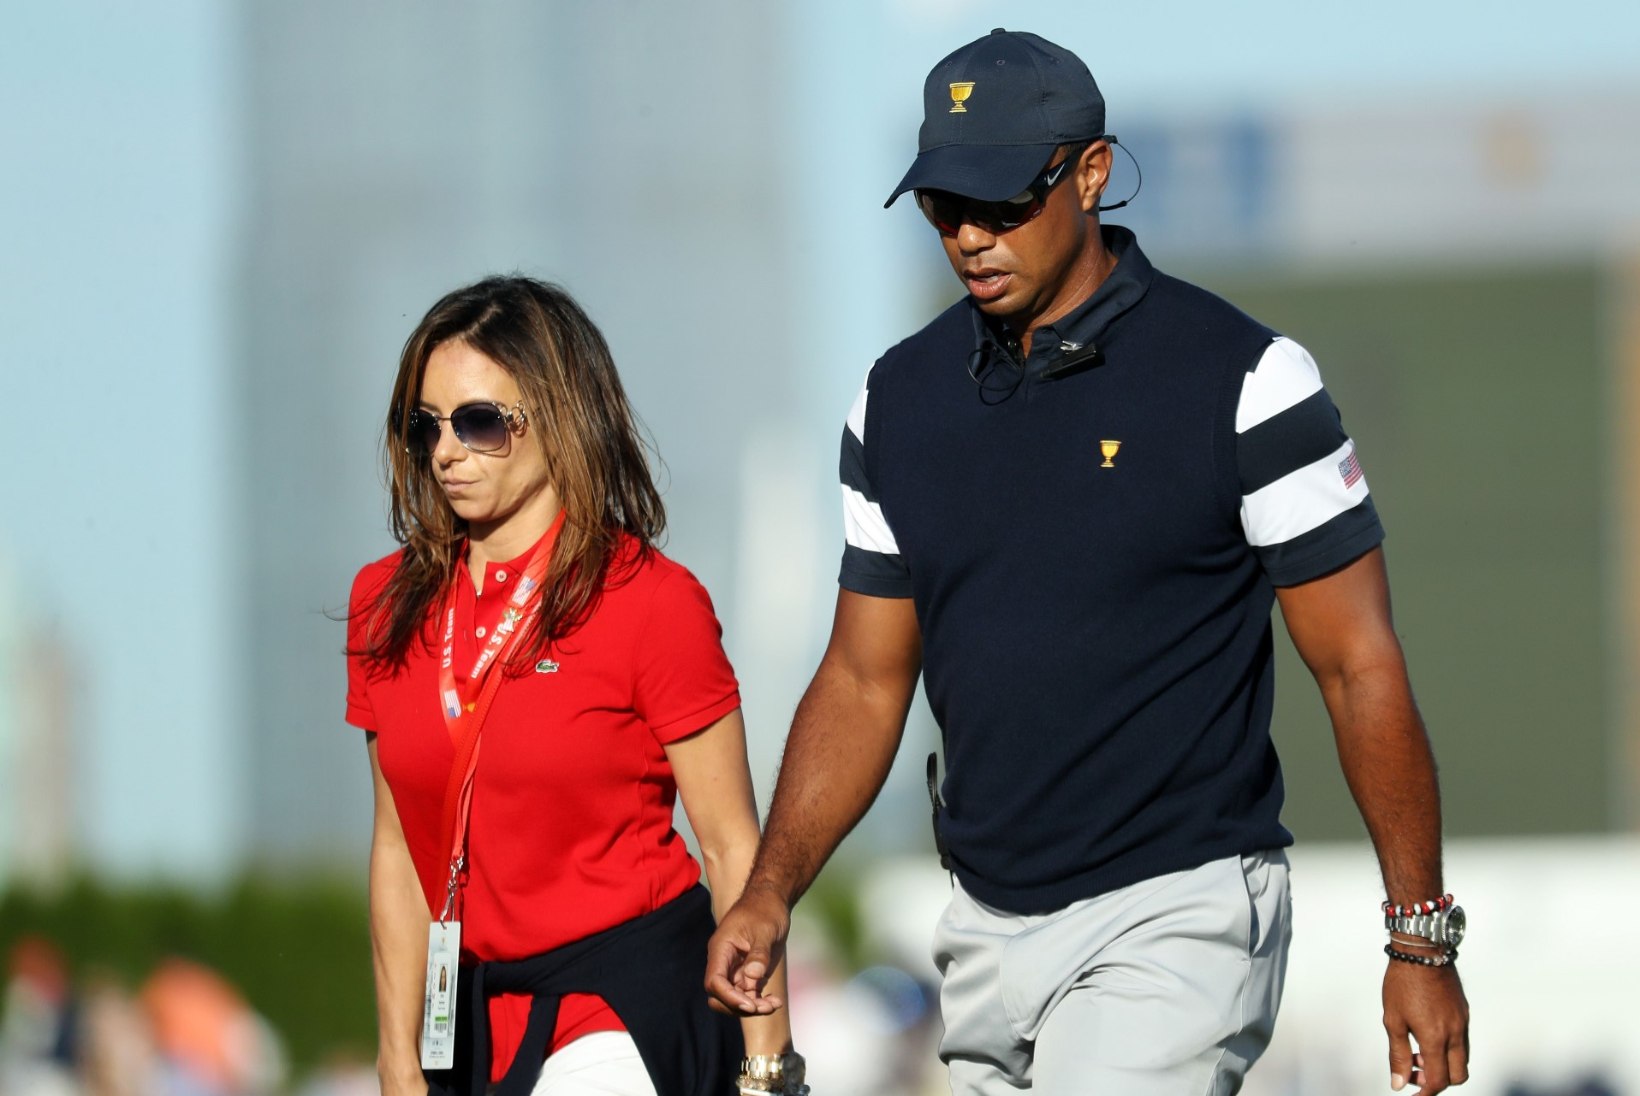 FOTOD | Seksisõltlase päästeingel! Vaata, milline naine peitub Tiger Woodsi eduloo taga